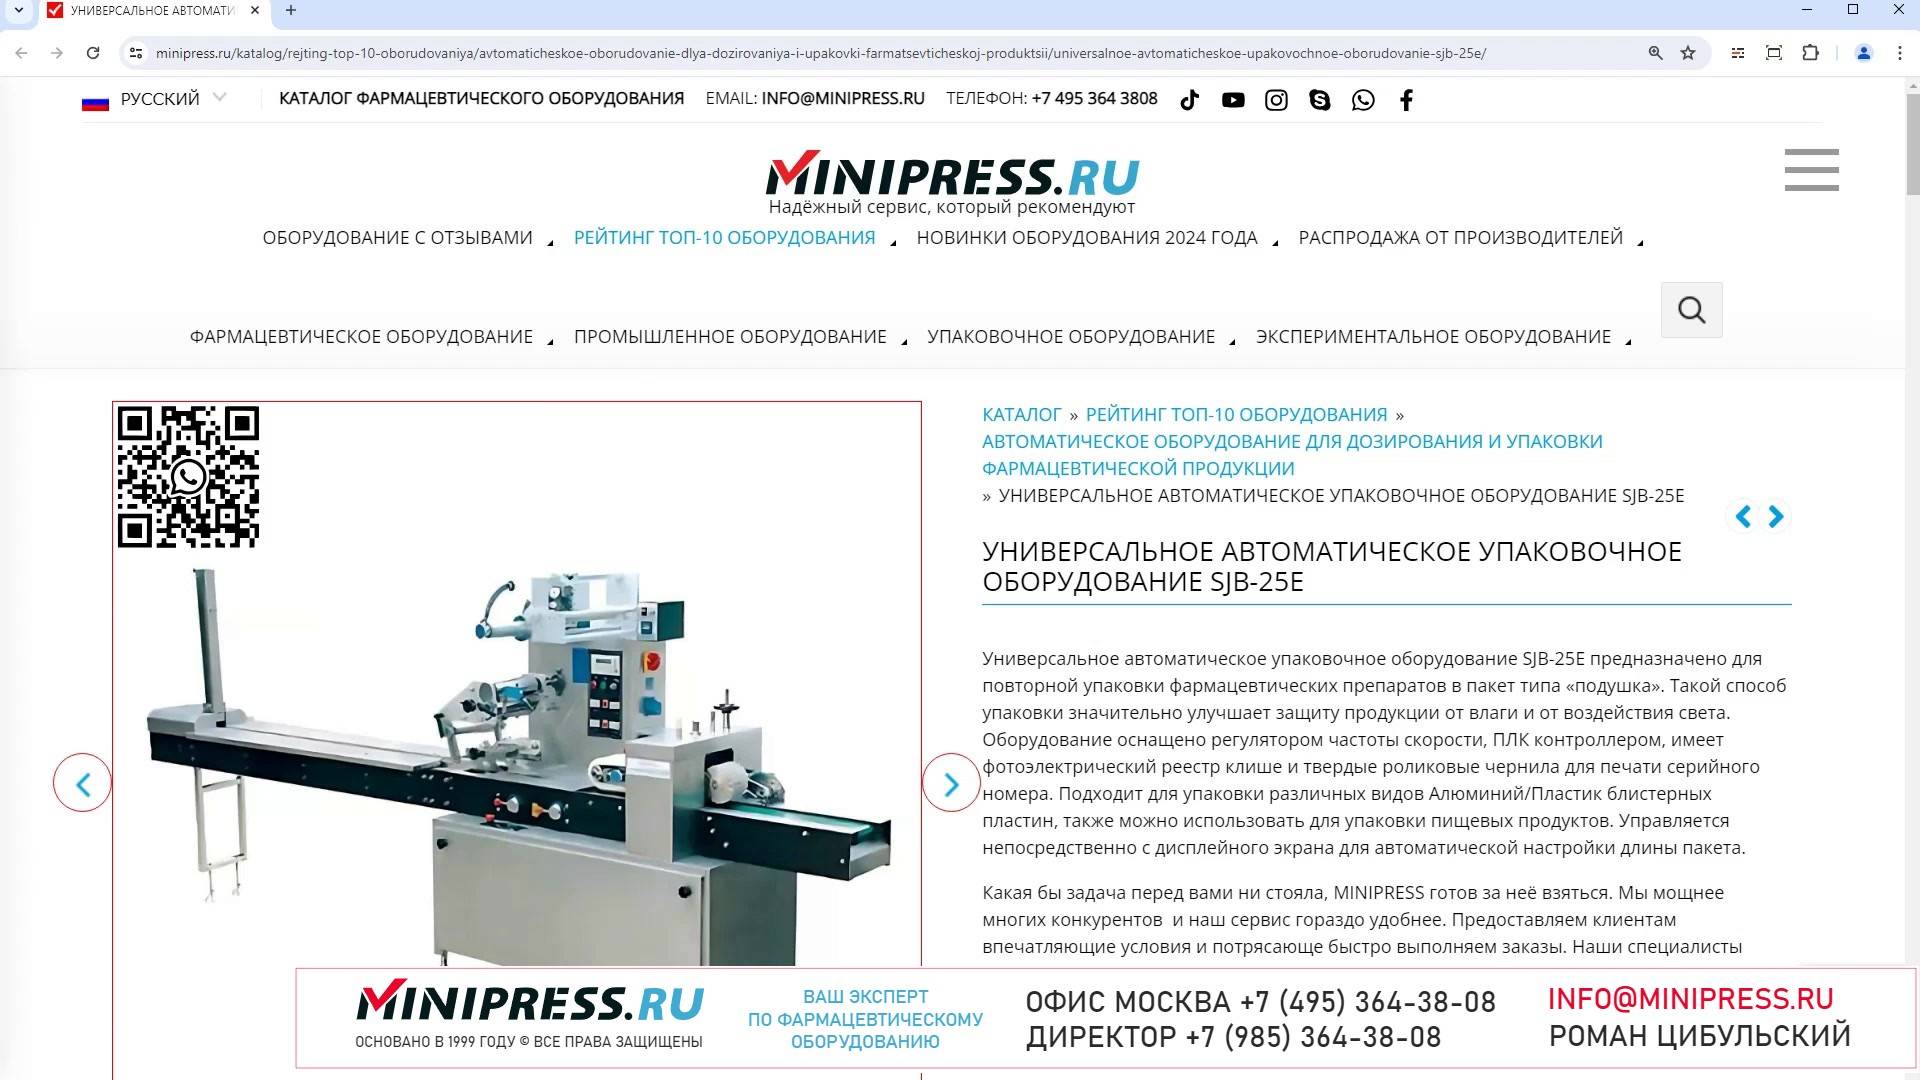 Minipress.ru Универсальное автоматическое упаковочное оборудование SJB-25E